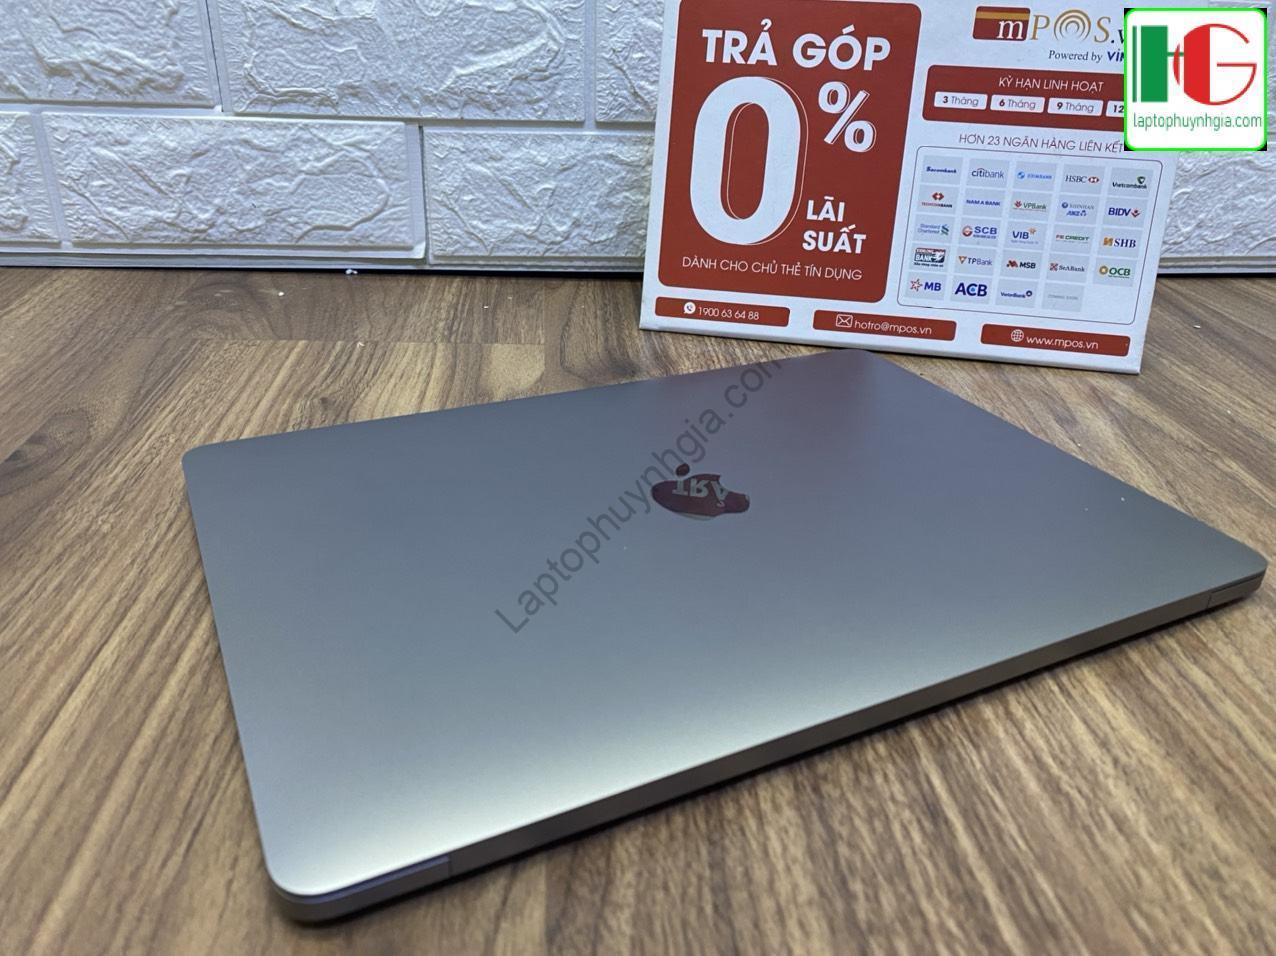 Laptop Macbook Pro 2017 I5 Ram8G SSD 256G LCD 13 Retina Laptophuynhgia - Laptop Cũ Bình Dương Huỳnh Gia